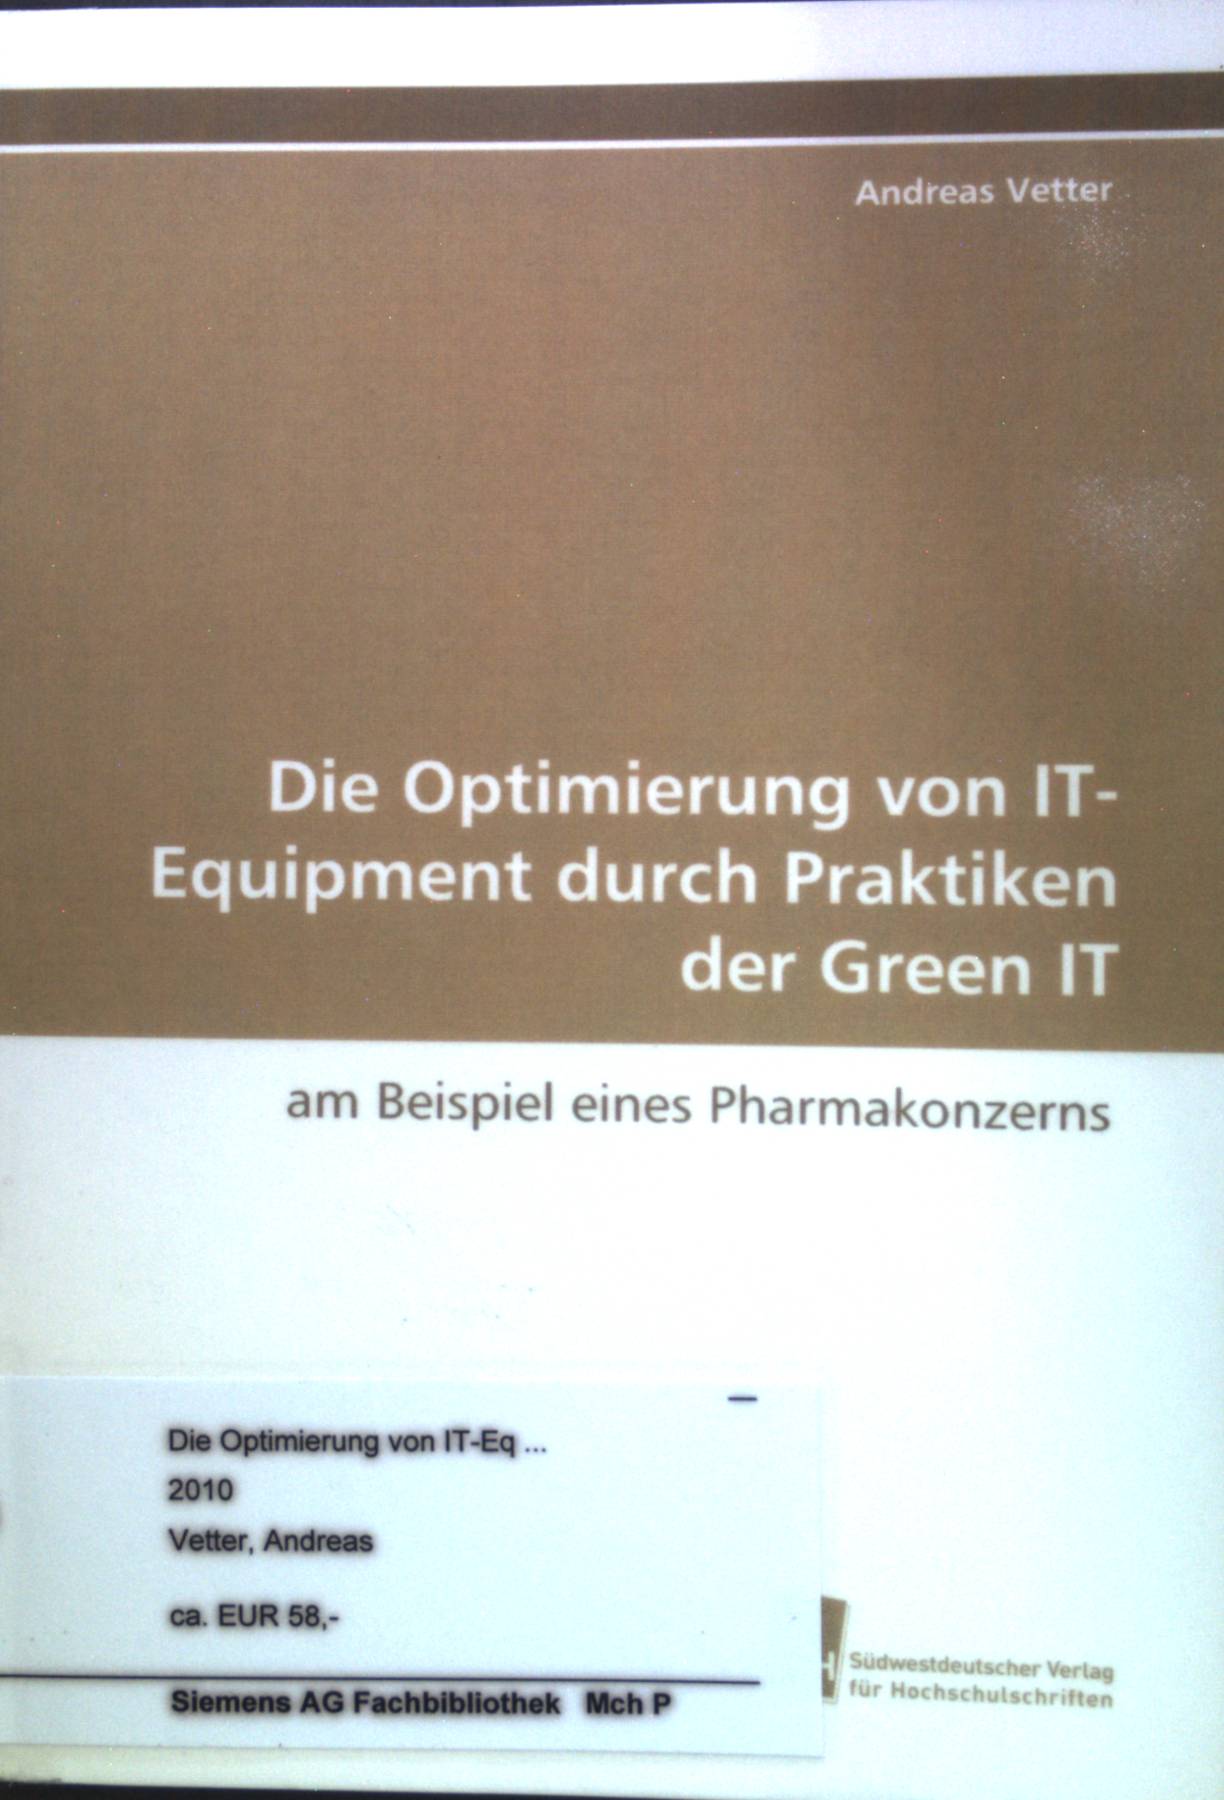 Die Optimierung von IT-Equipment durch Praktiken der Green IT : am Beispiel eines Pharmakonzerns. - Vetter, Andreas